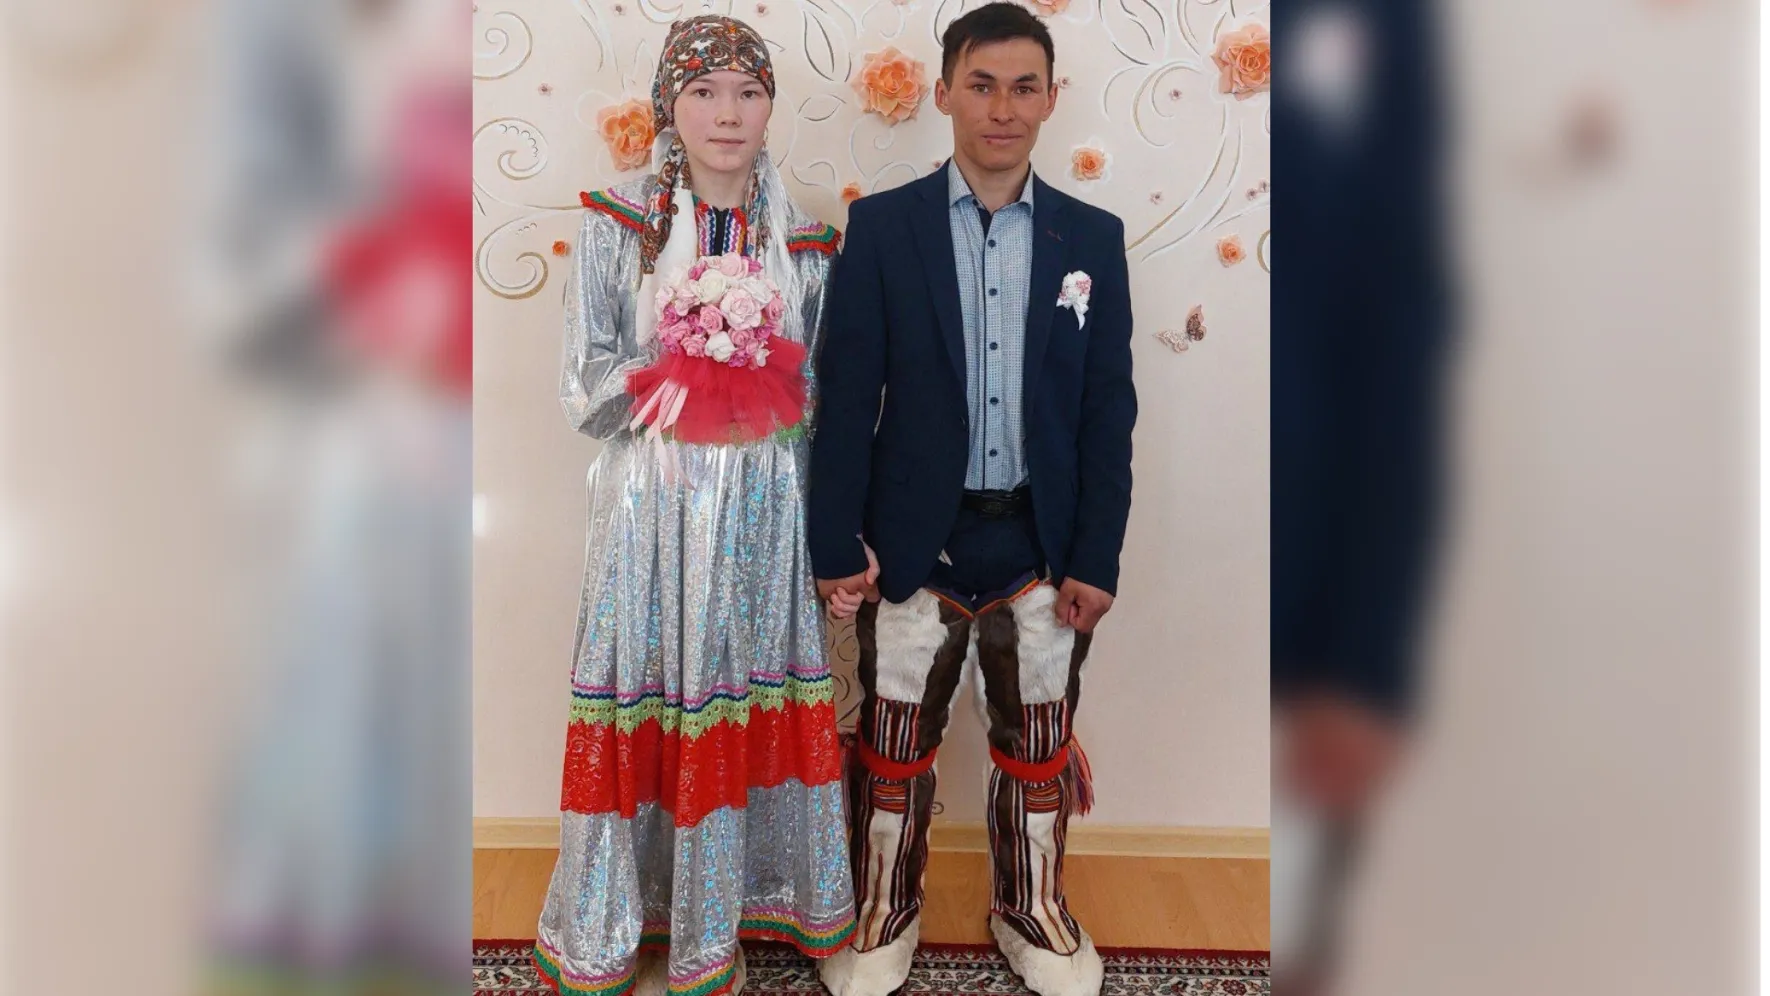 Национальные свадьбы на Ямале чаще всего играют в северных муниципалитетах. Фото: zags.yanao.ru